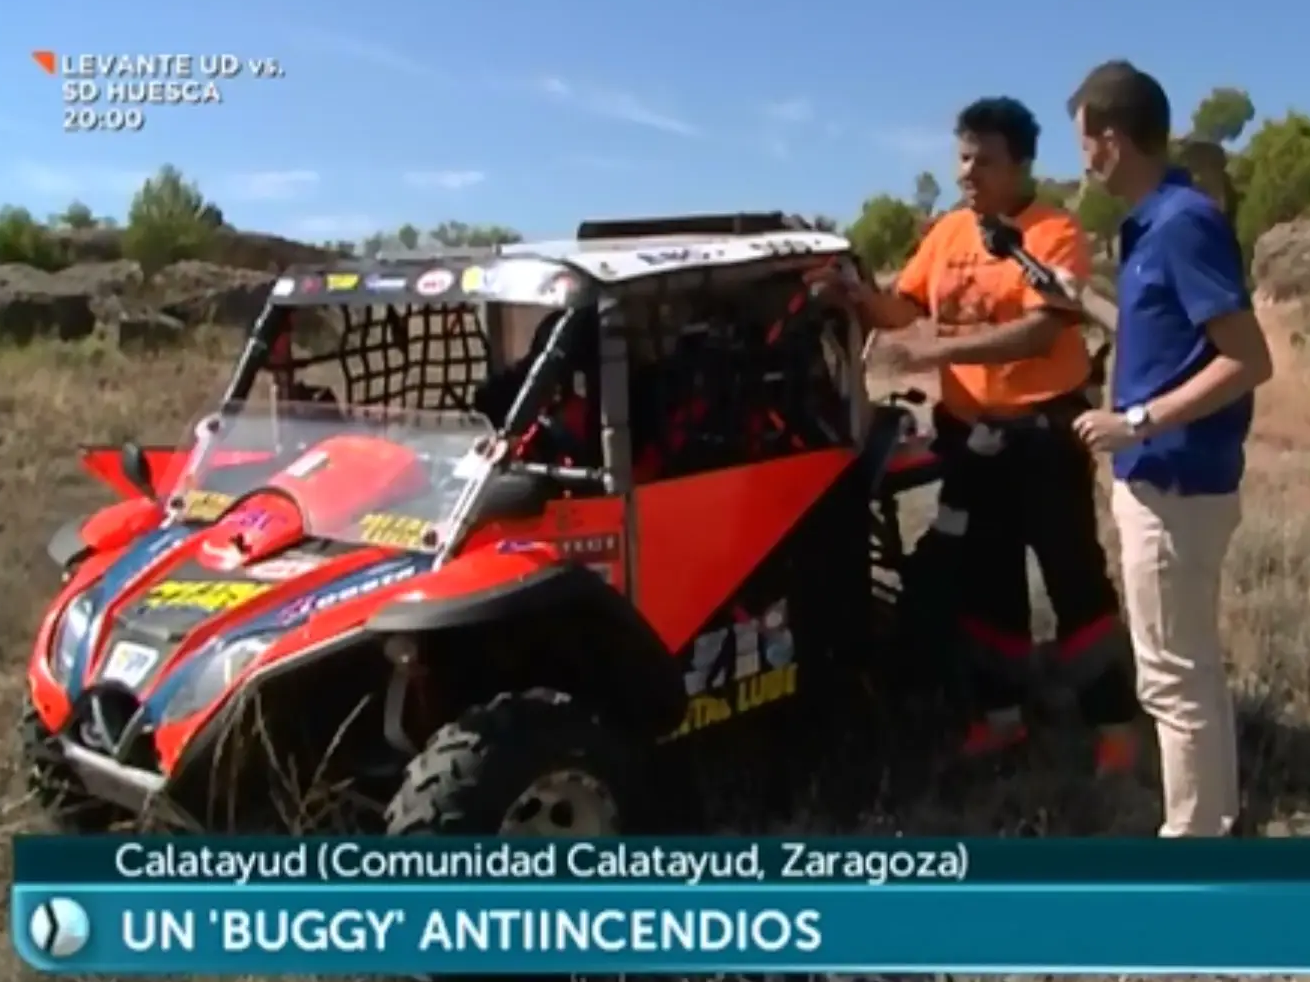 Aragon TV entrevista a conductor de Buggy protegido contraexplosiones con Explostop 1/8/2019